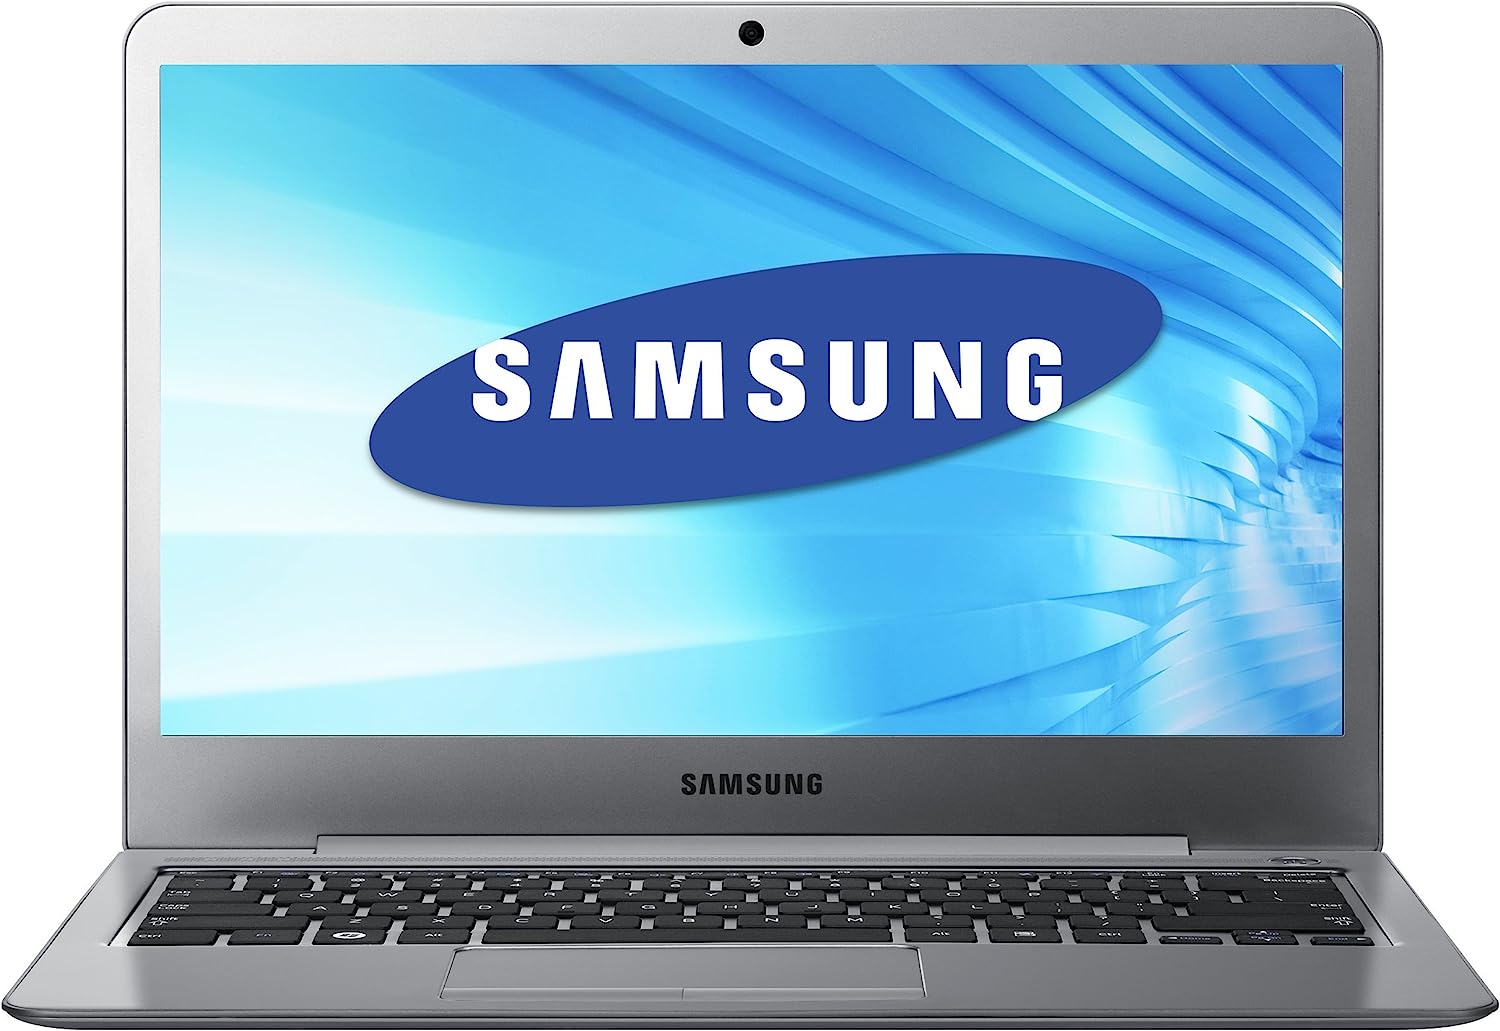 Samsung Series 5 Ultrabook NP530U3B Notebook